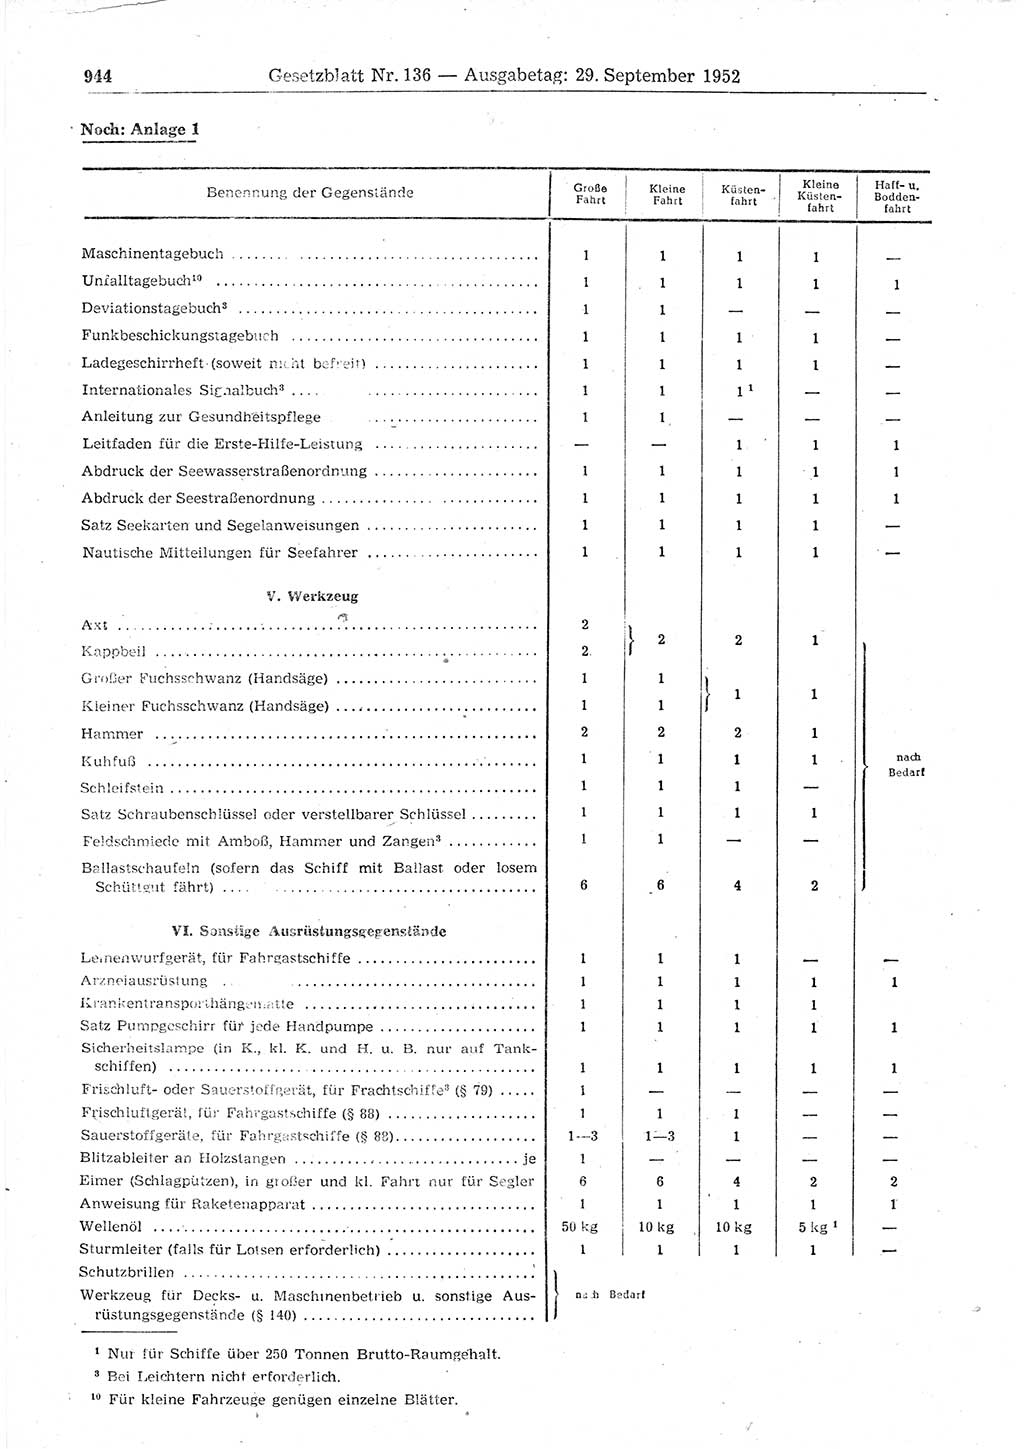 Gesetzblatt (GBl.) der Deutschen Demokratischen Republik (DDR) 1952, Seite 944 (GBl. DDR 1952, S. 944)